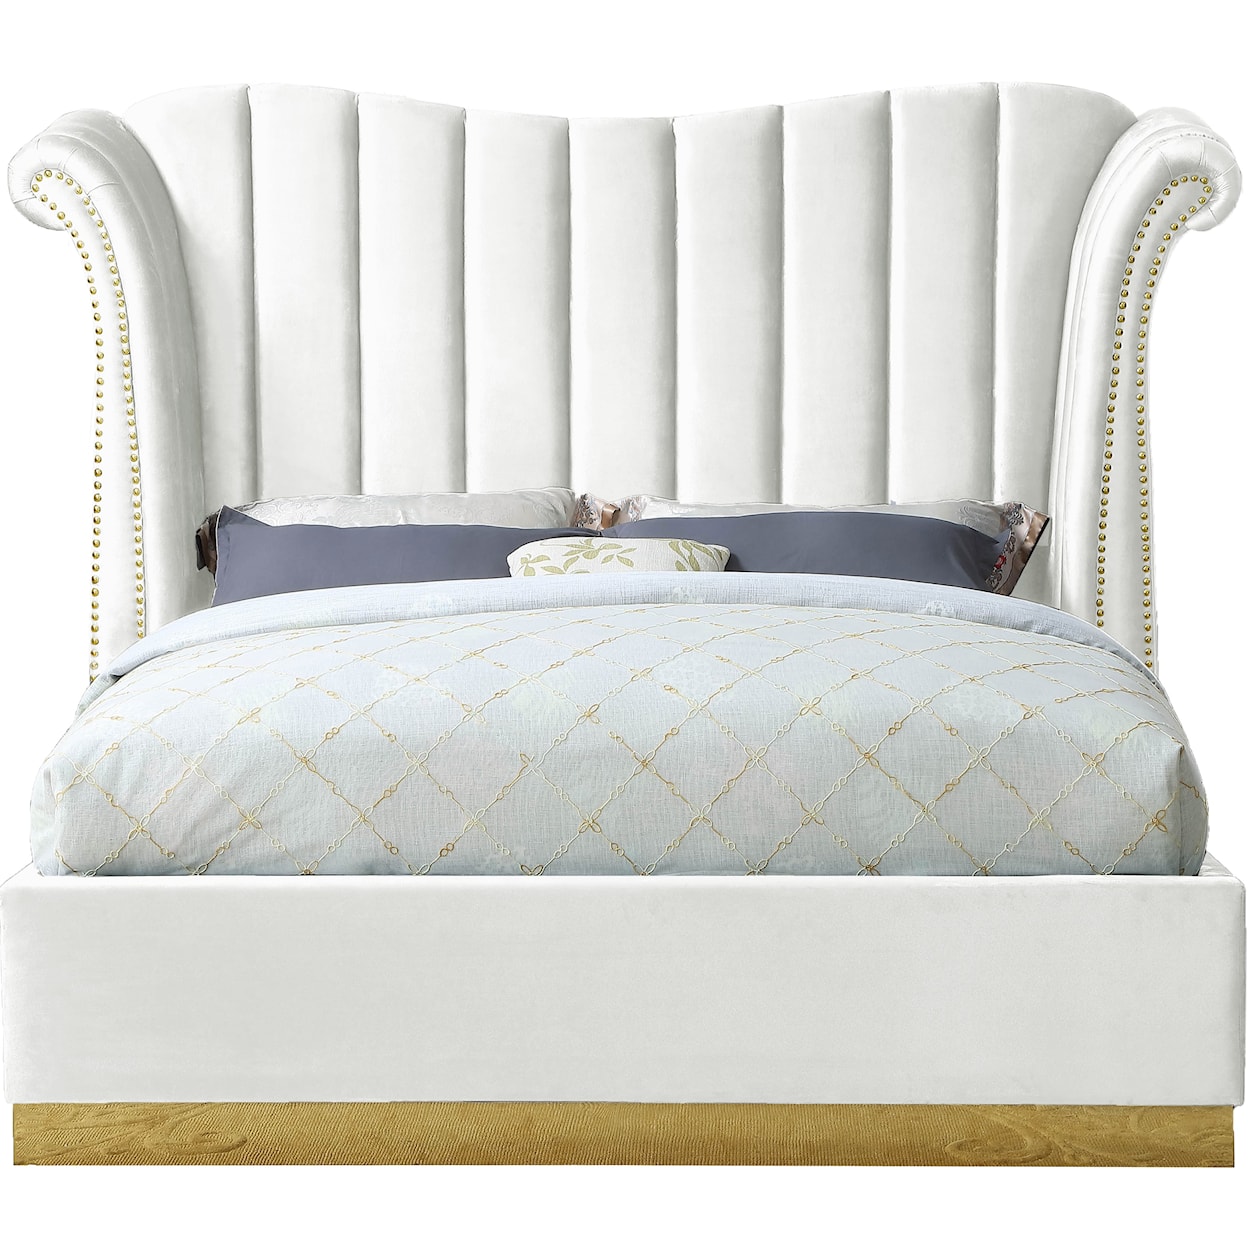 Meridian Furniture Flora Upholstered White Velvet Queen Bed 